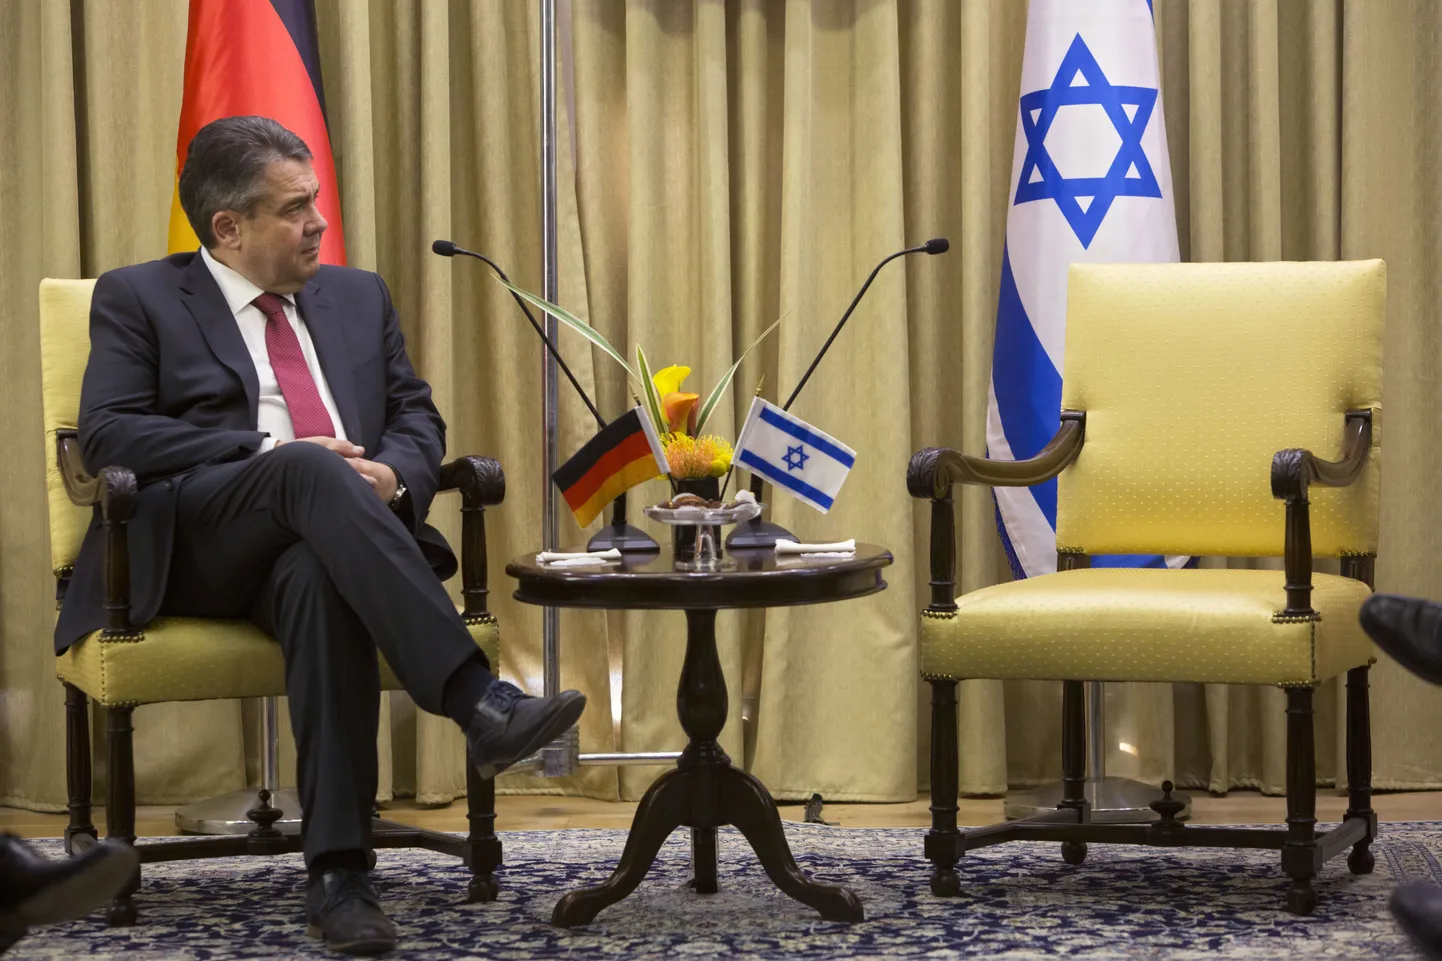 Saksa välisminister Sigmar Gabriel ja tühi tool. Õige pea tuli sinna istuma siiski Iisraeli riigipea Reuven Rivlin. Foto on tehtud Jeruusalemmas presidendi residentsis.